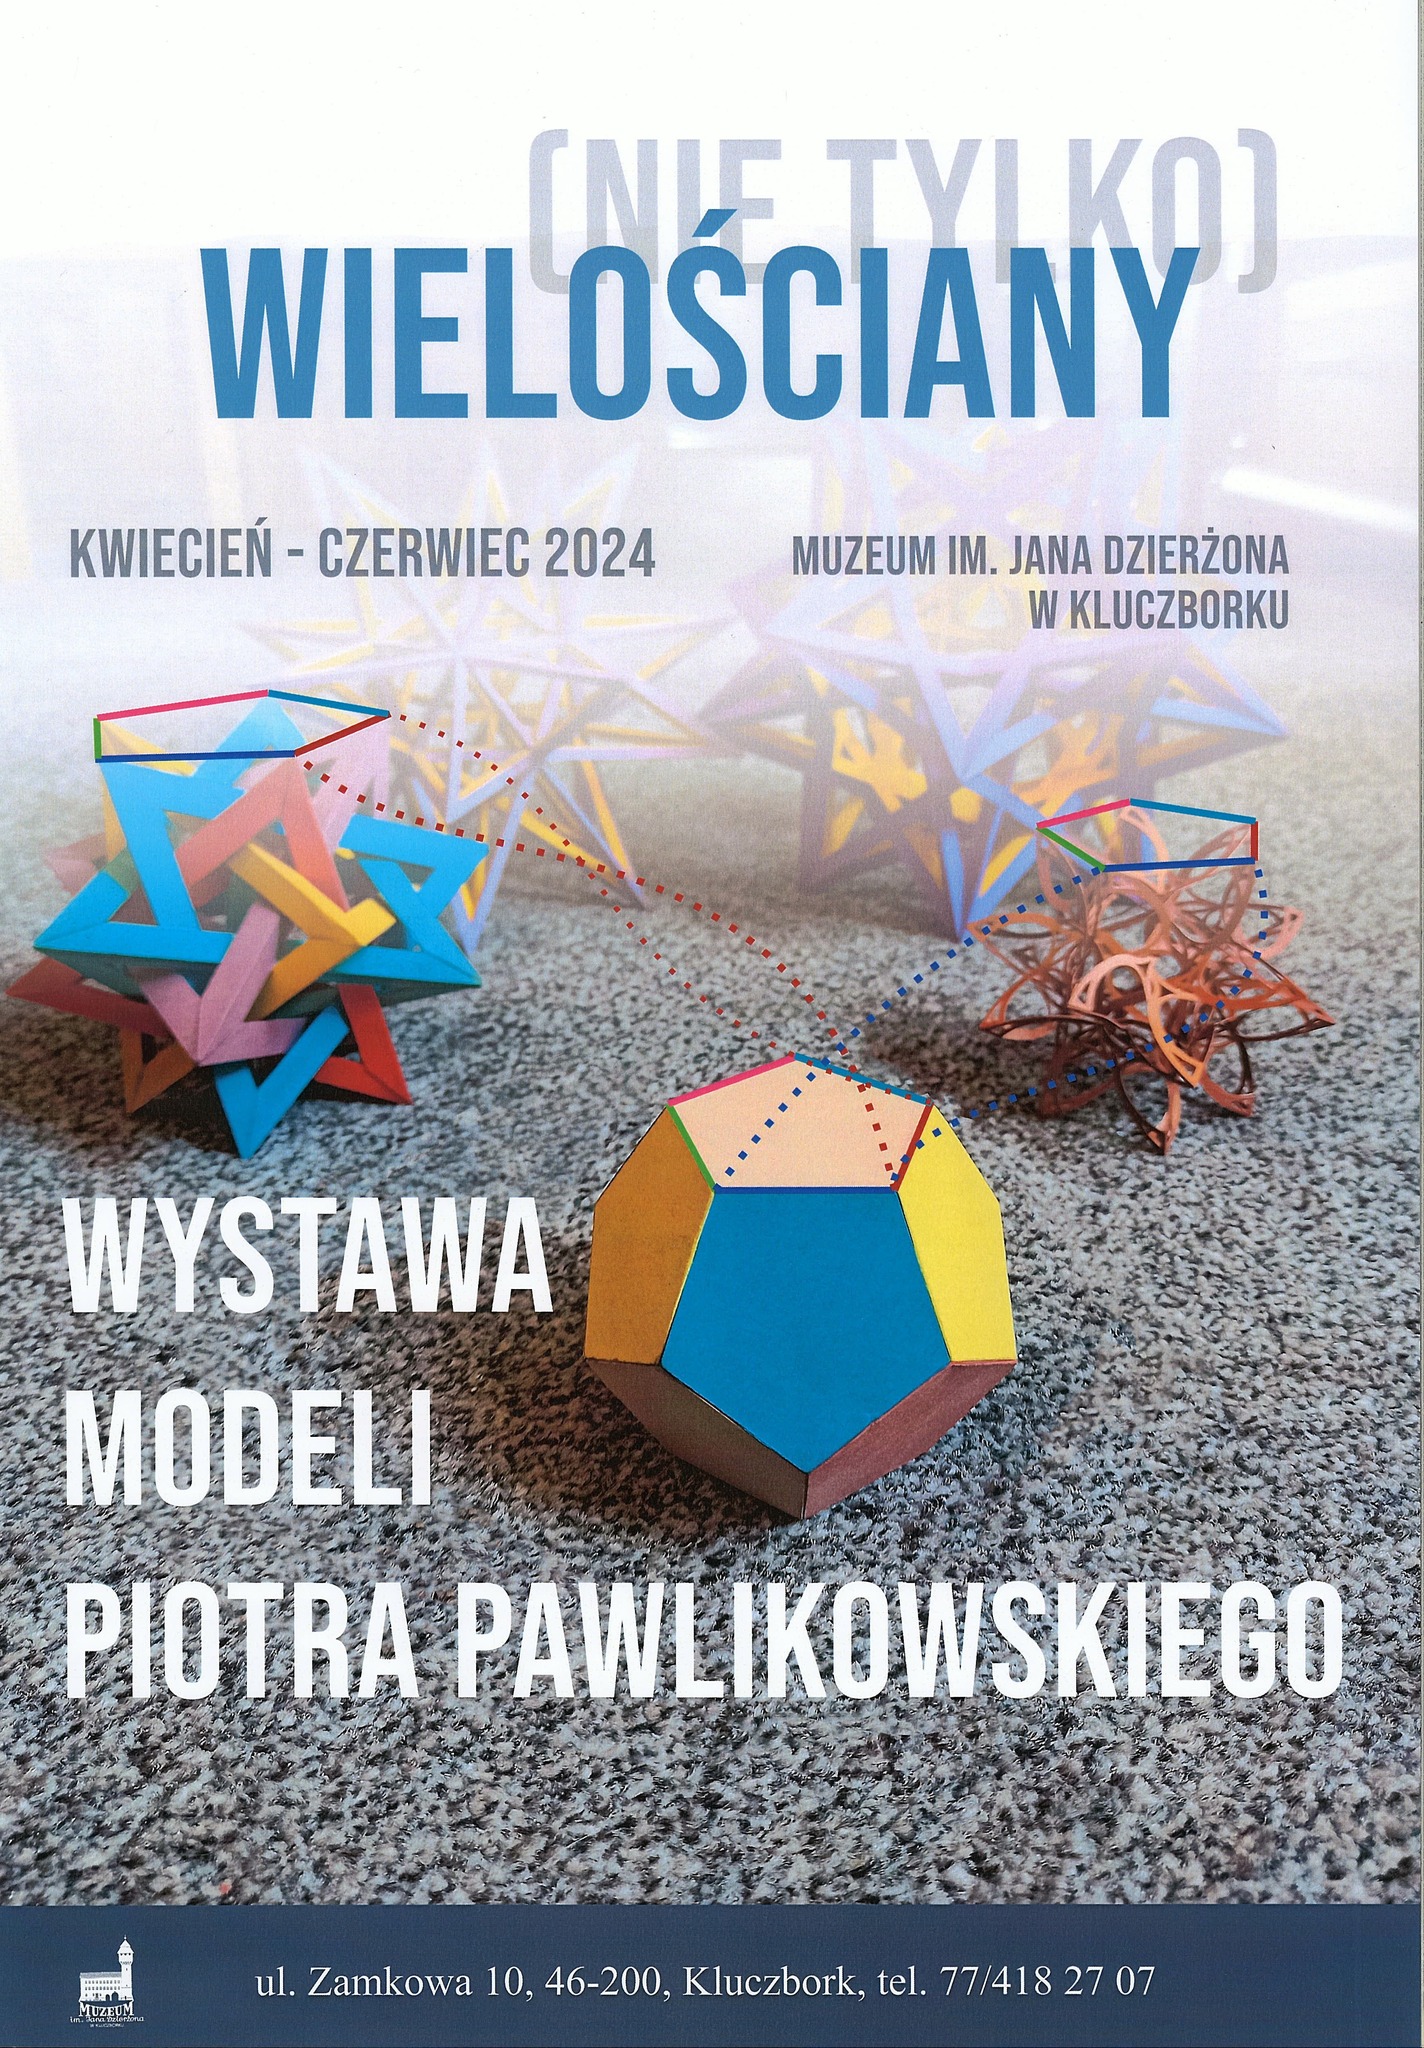 (Nie tylko) wielościany - wystawa modeli Piotra Pawlikowskiego (plakat ekspozycji).